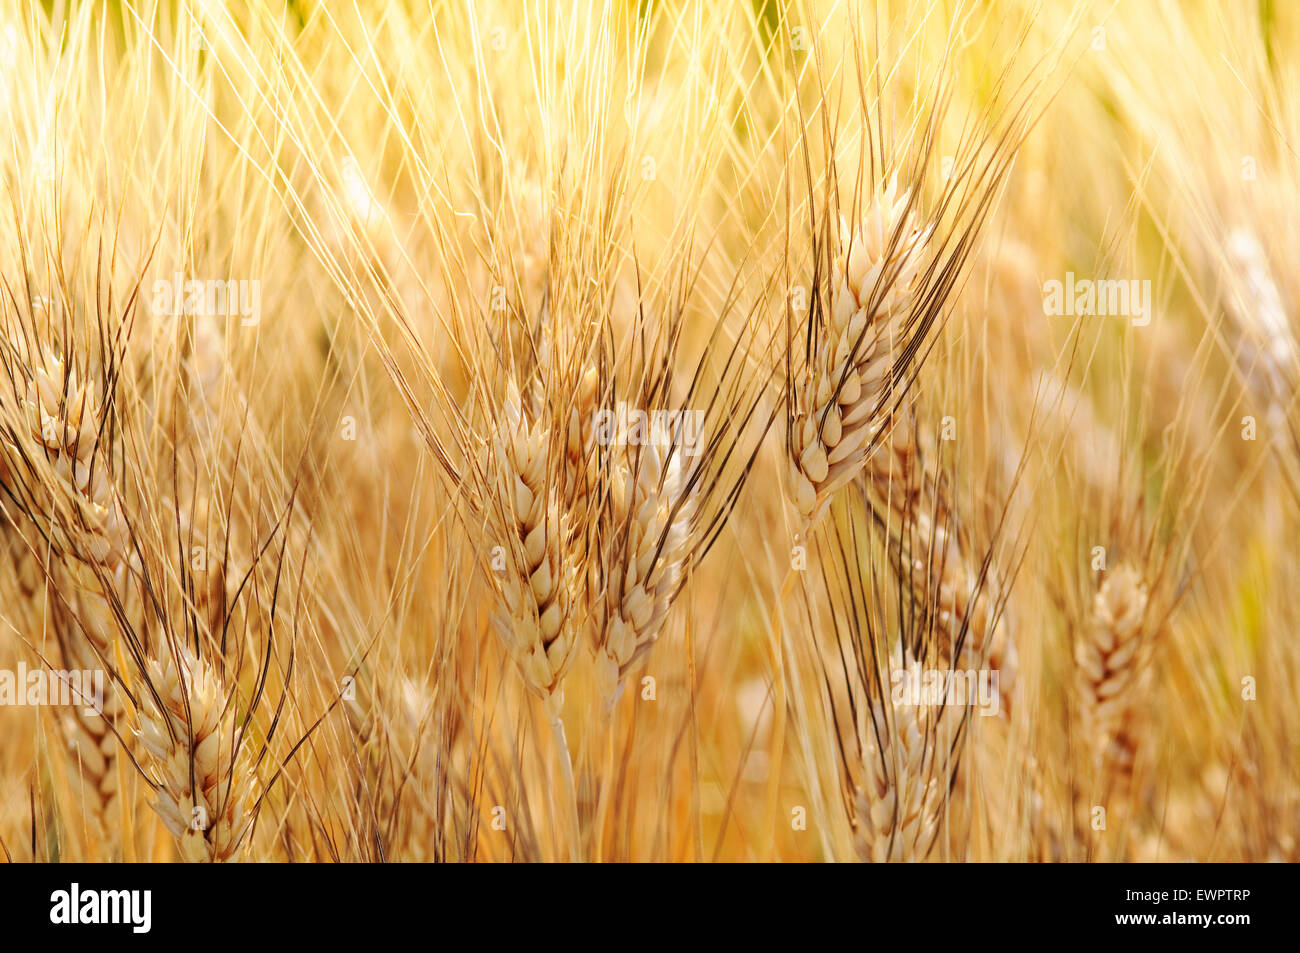 Durum Wheat, Triticum durum. Stock Photo